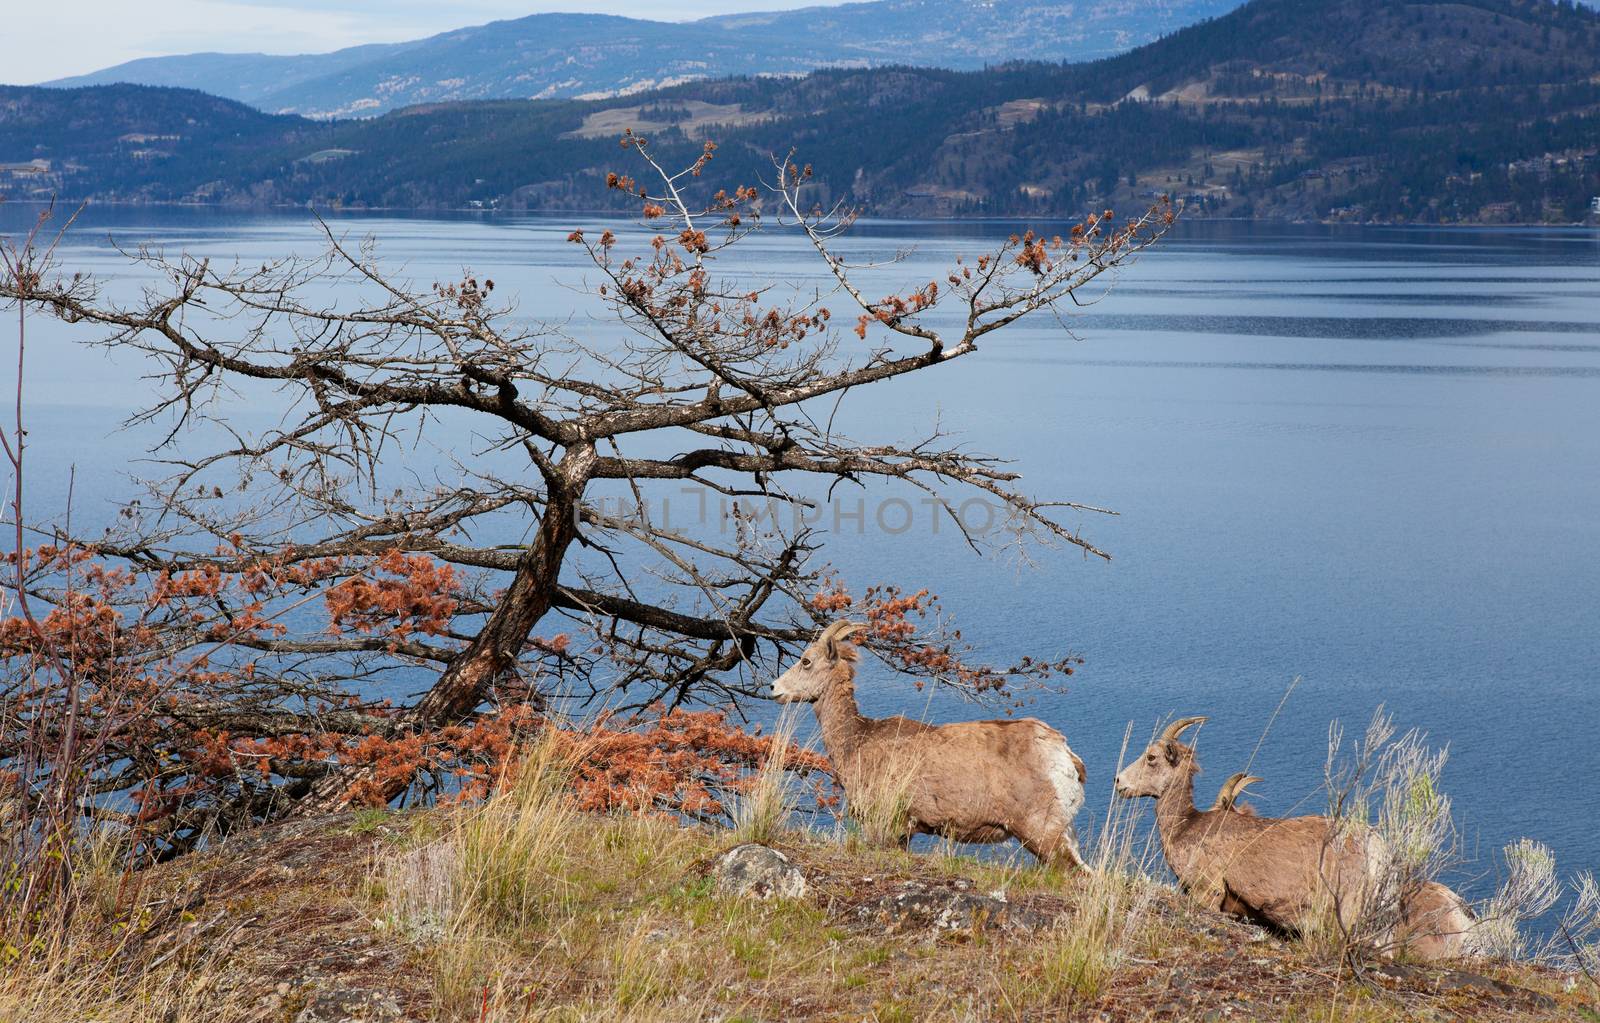 Rocky Mountain Goats along the west shore of Lake Okanagan in spring.